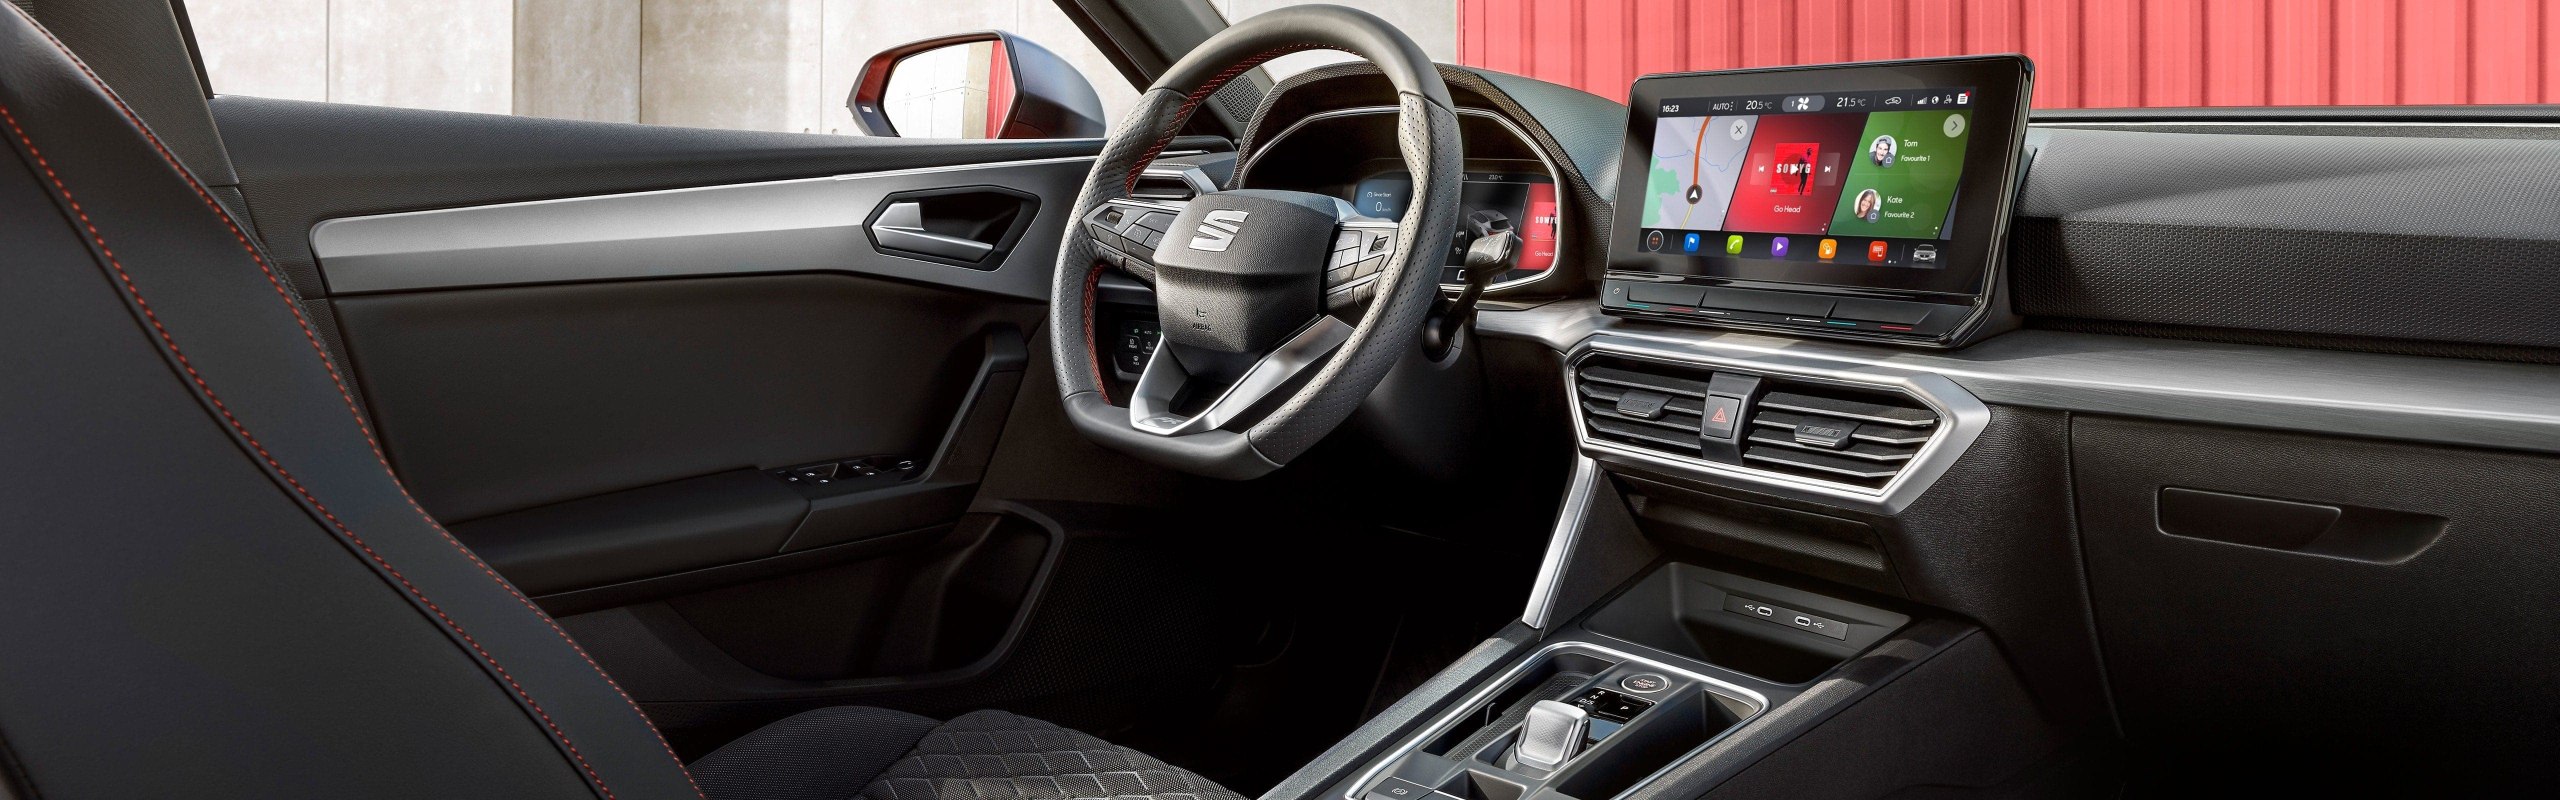 Τεχνολογία συνδεσιμότητας νέου SEAT Leon